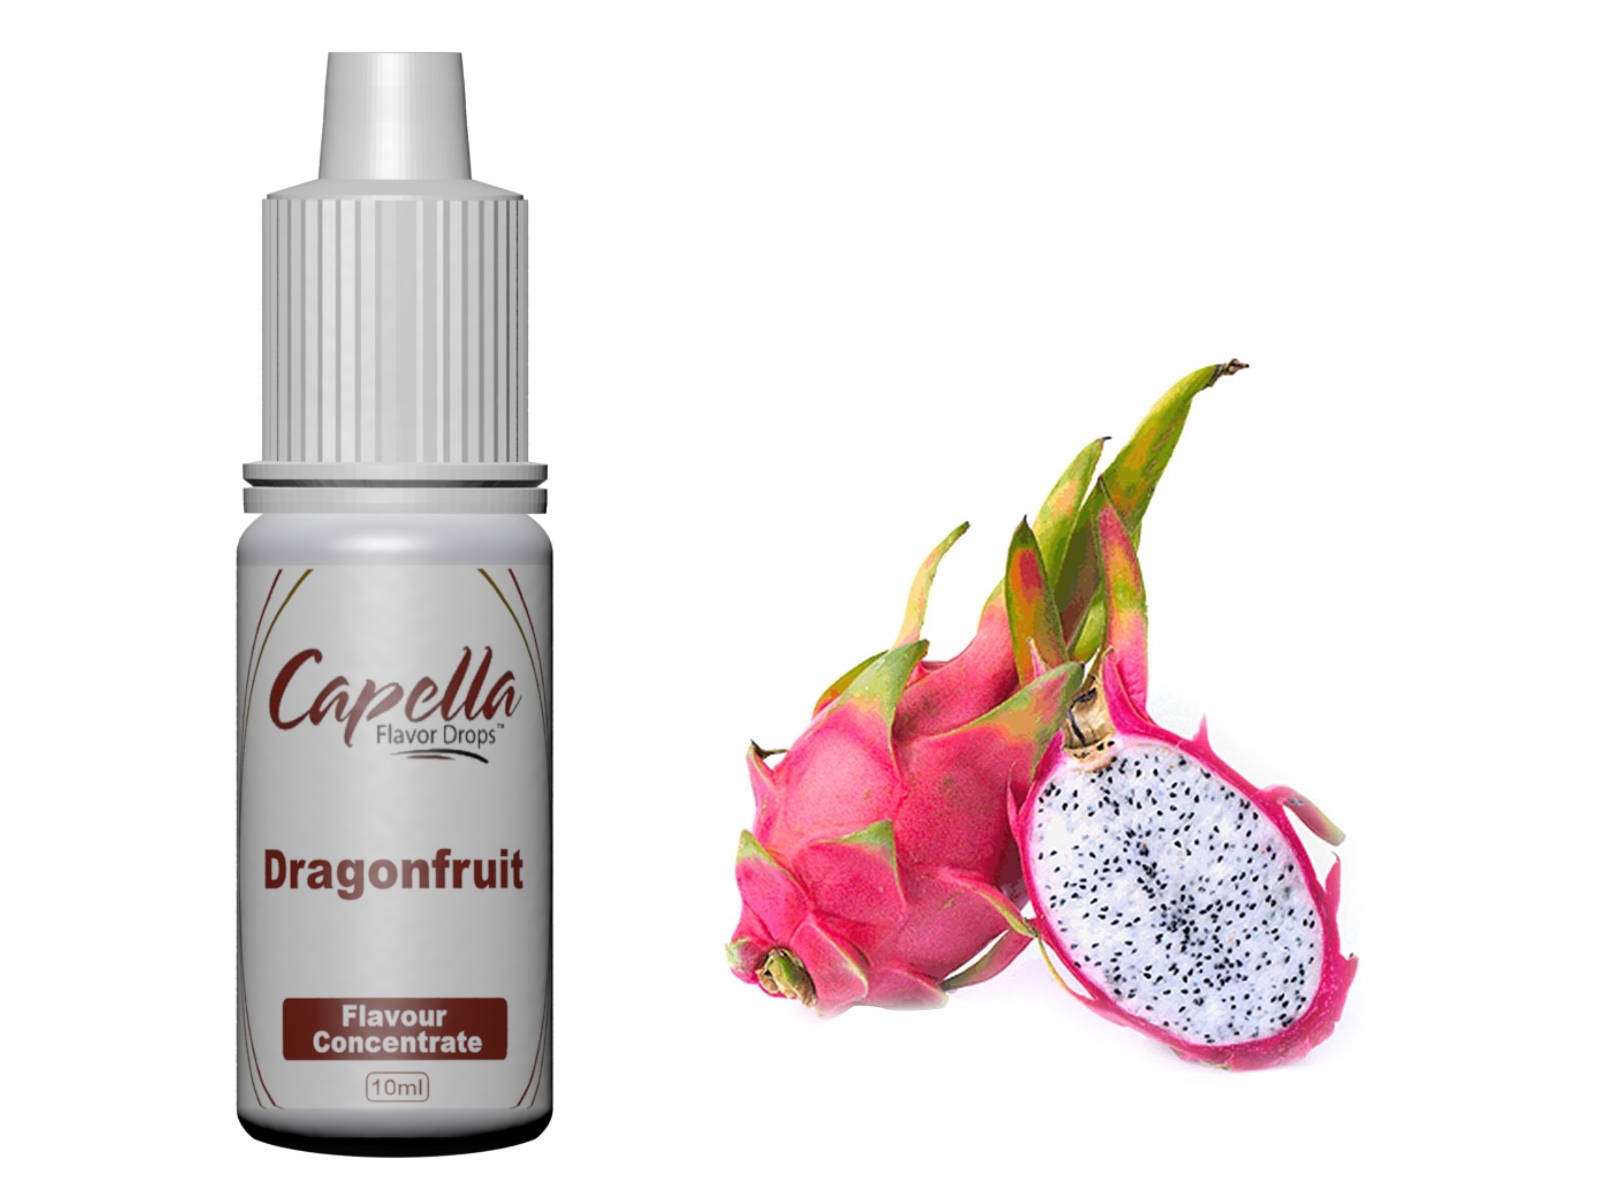 Capella Dragonfruit Flavour